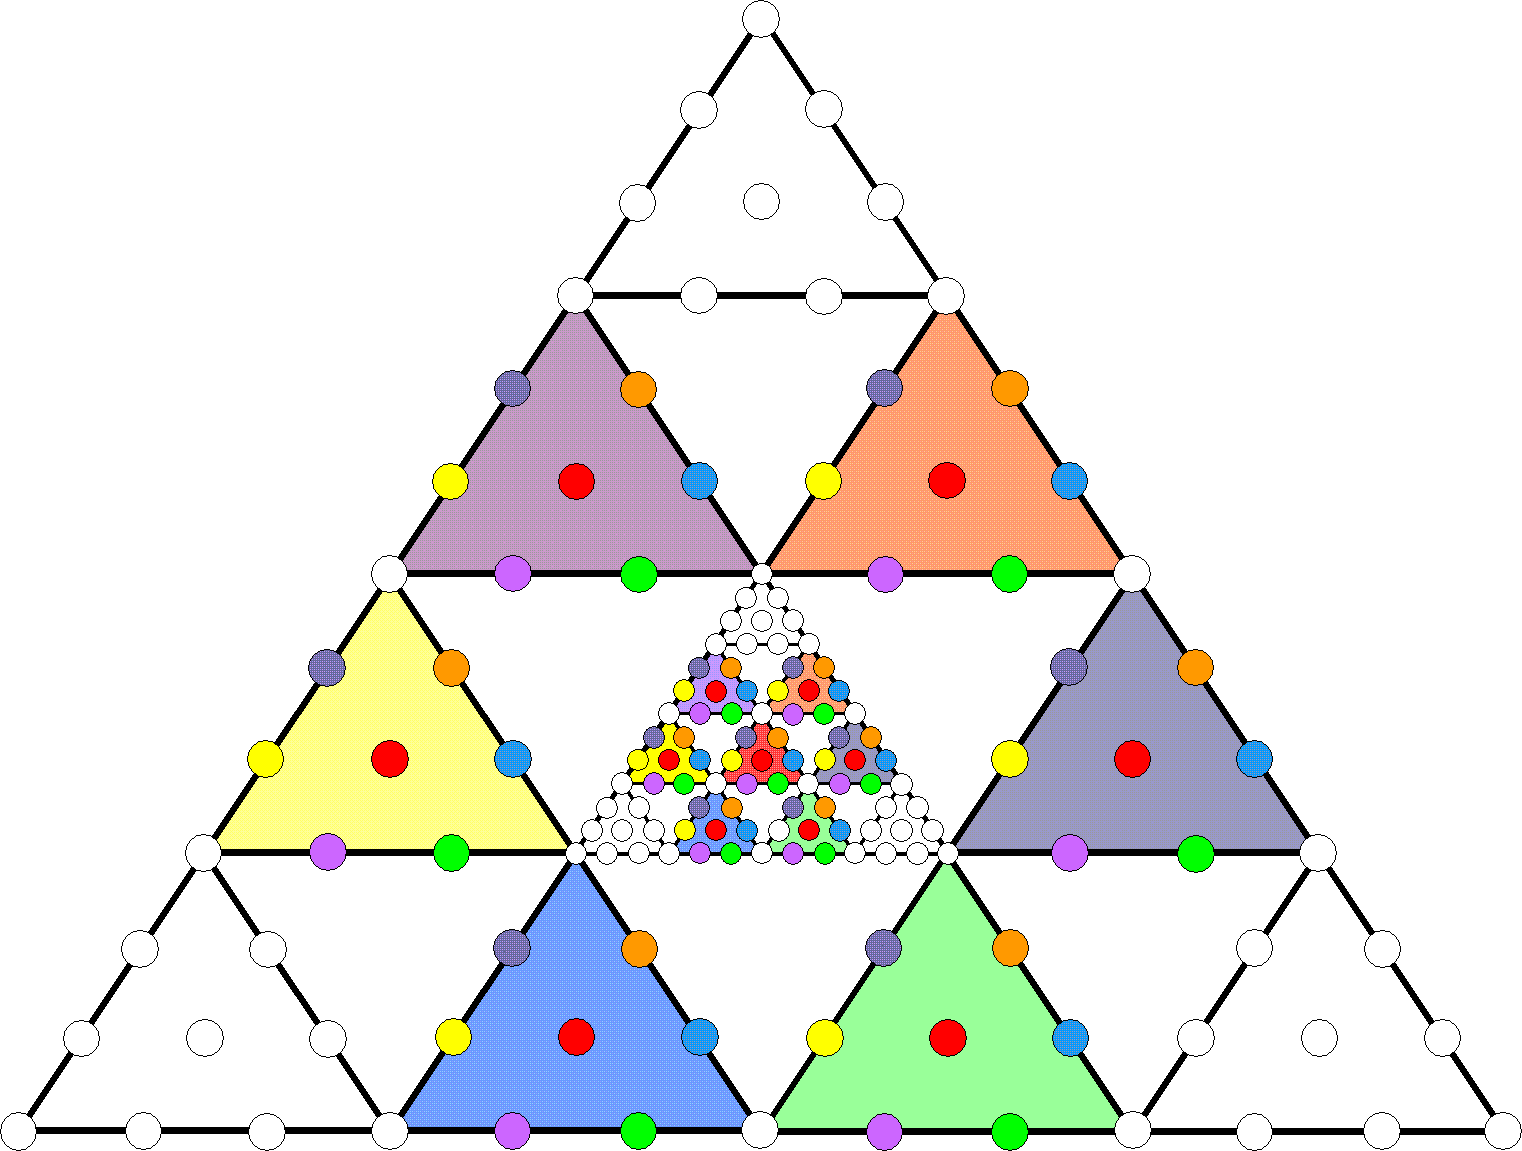 91 hexagonal yods in Cosmic Tetractys